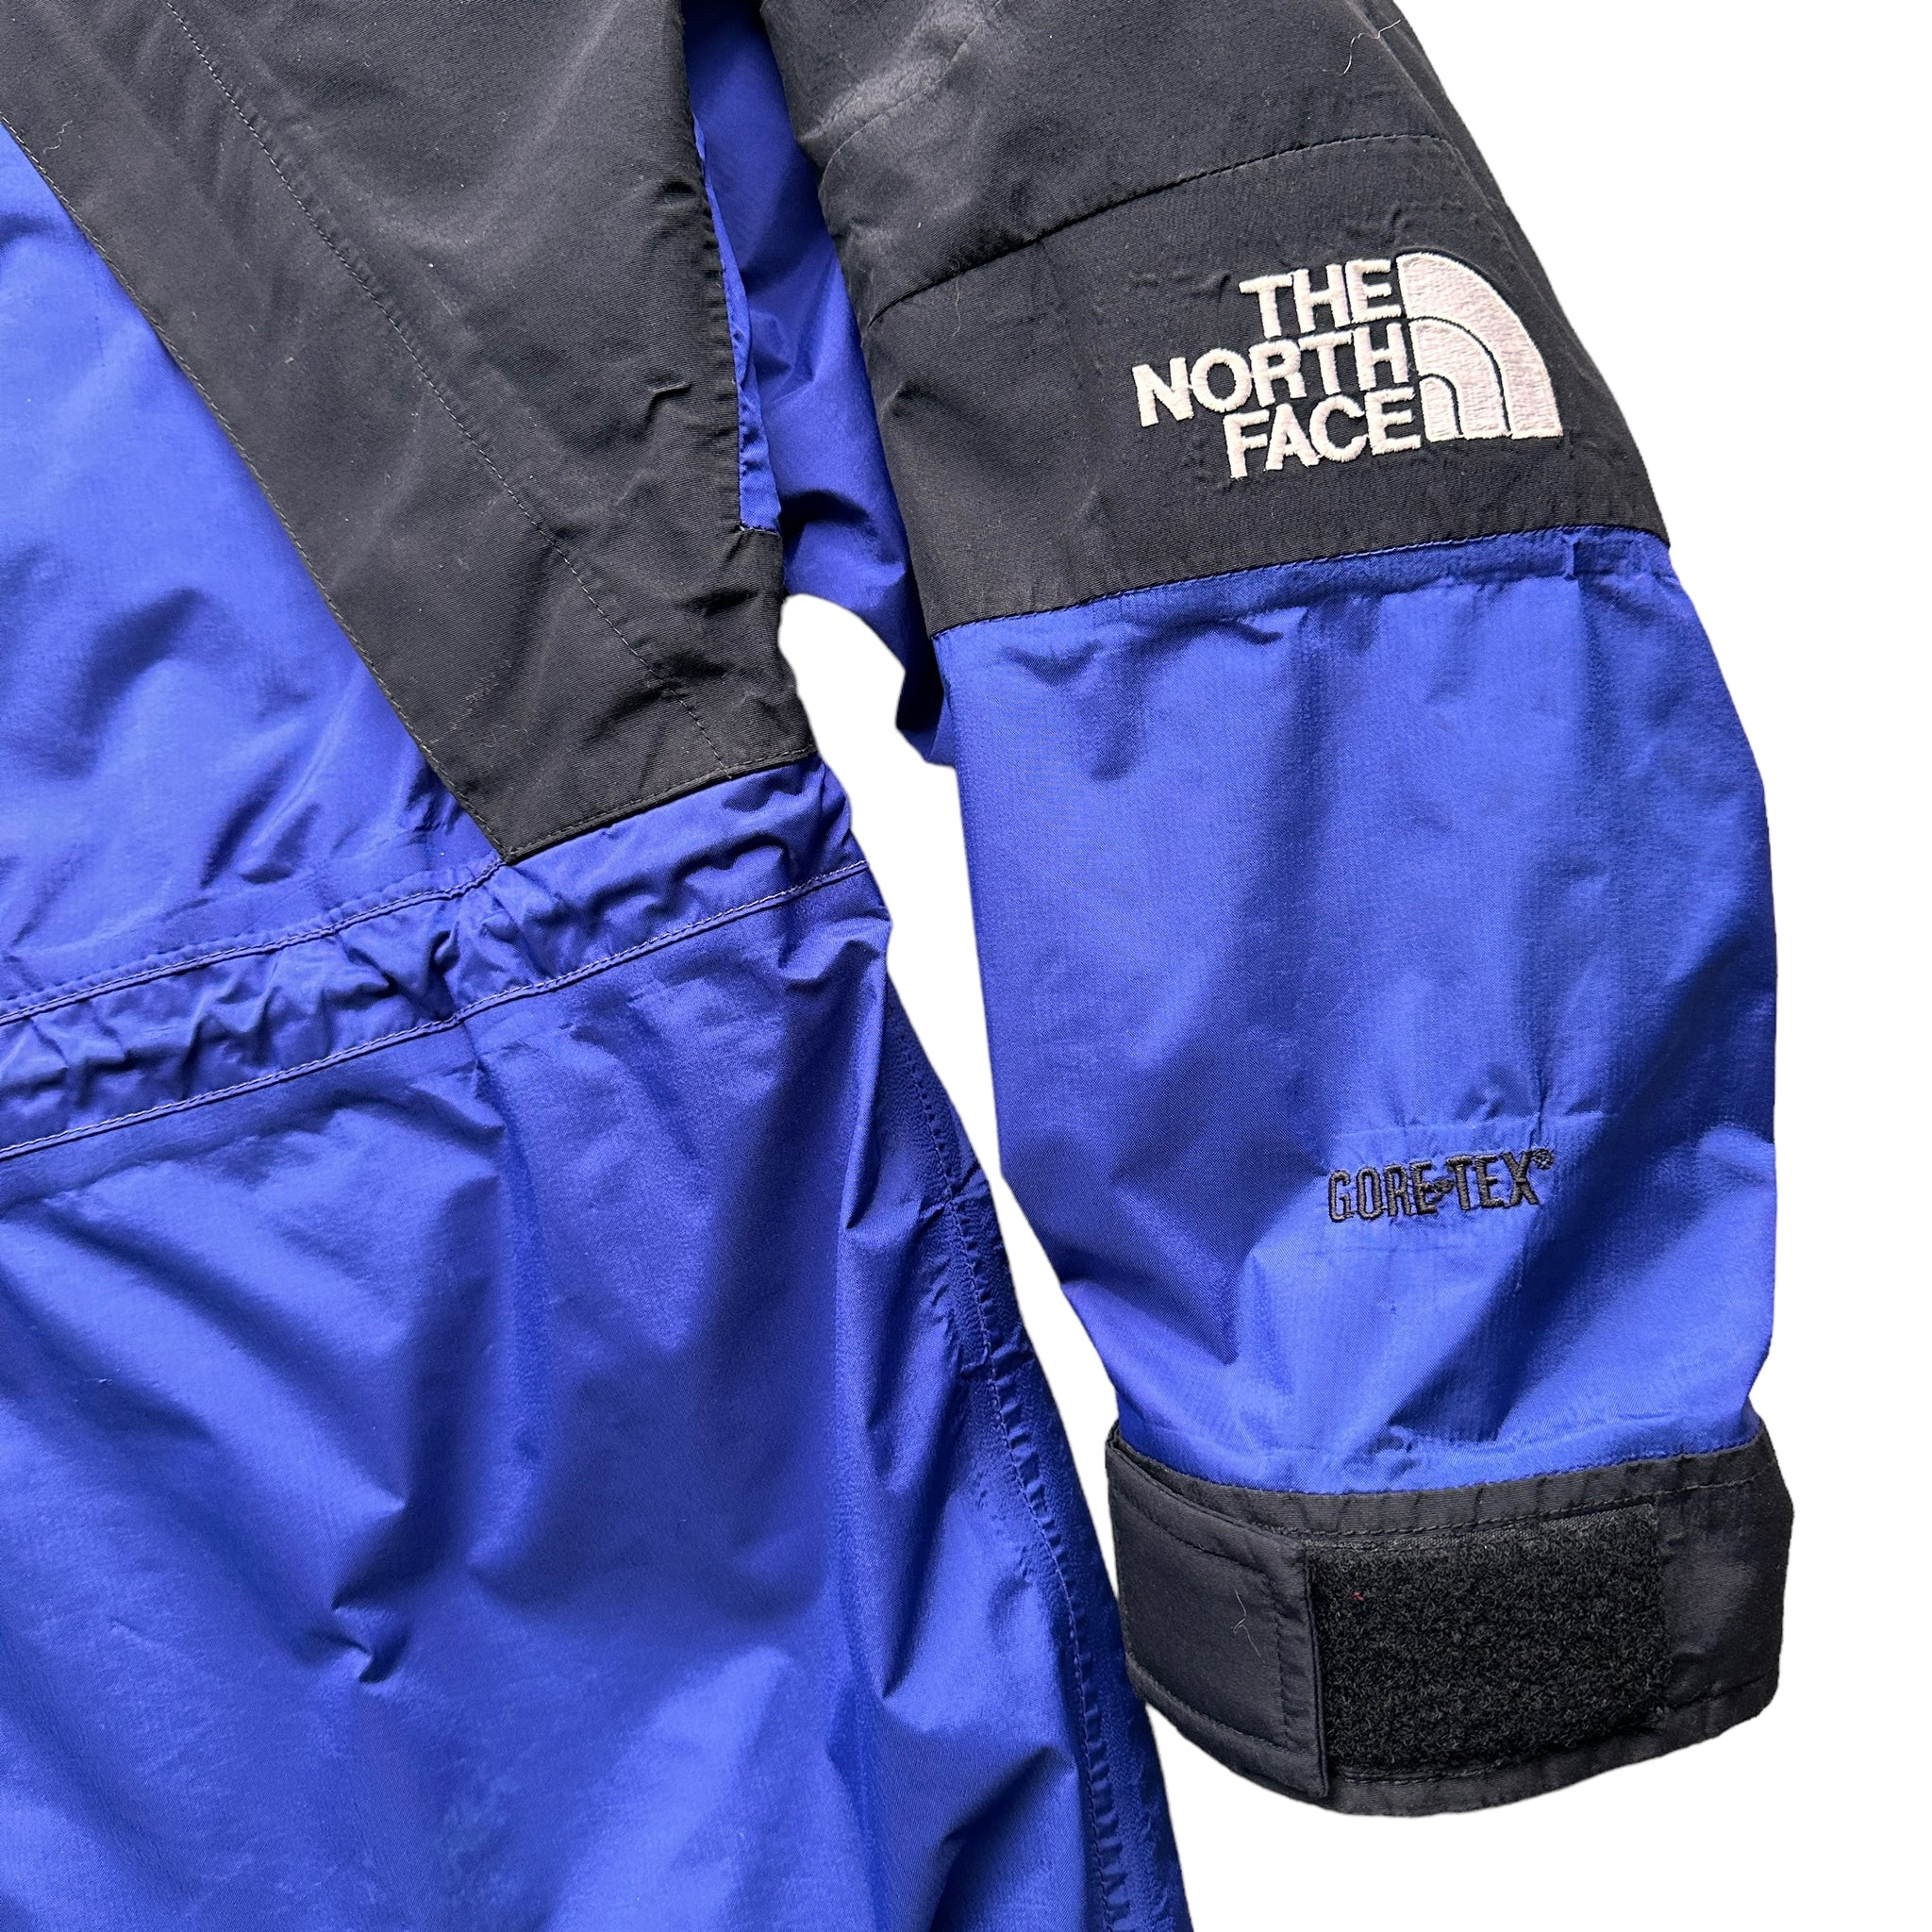 90s Northface mountain jacket XL